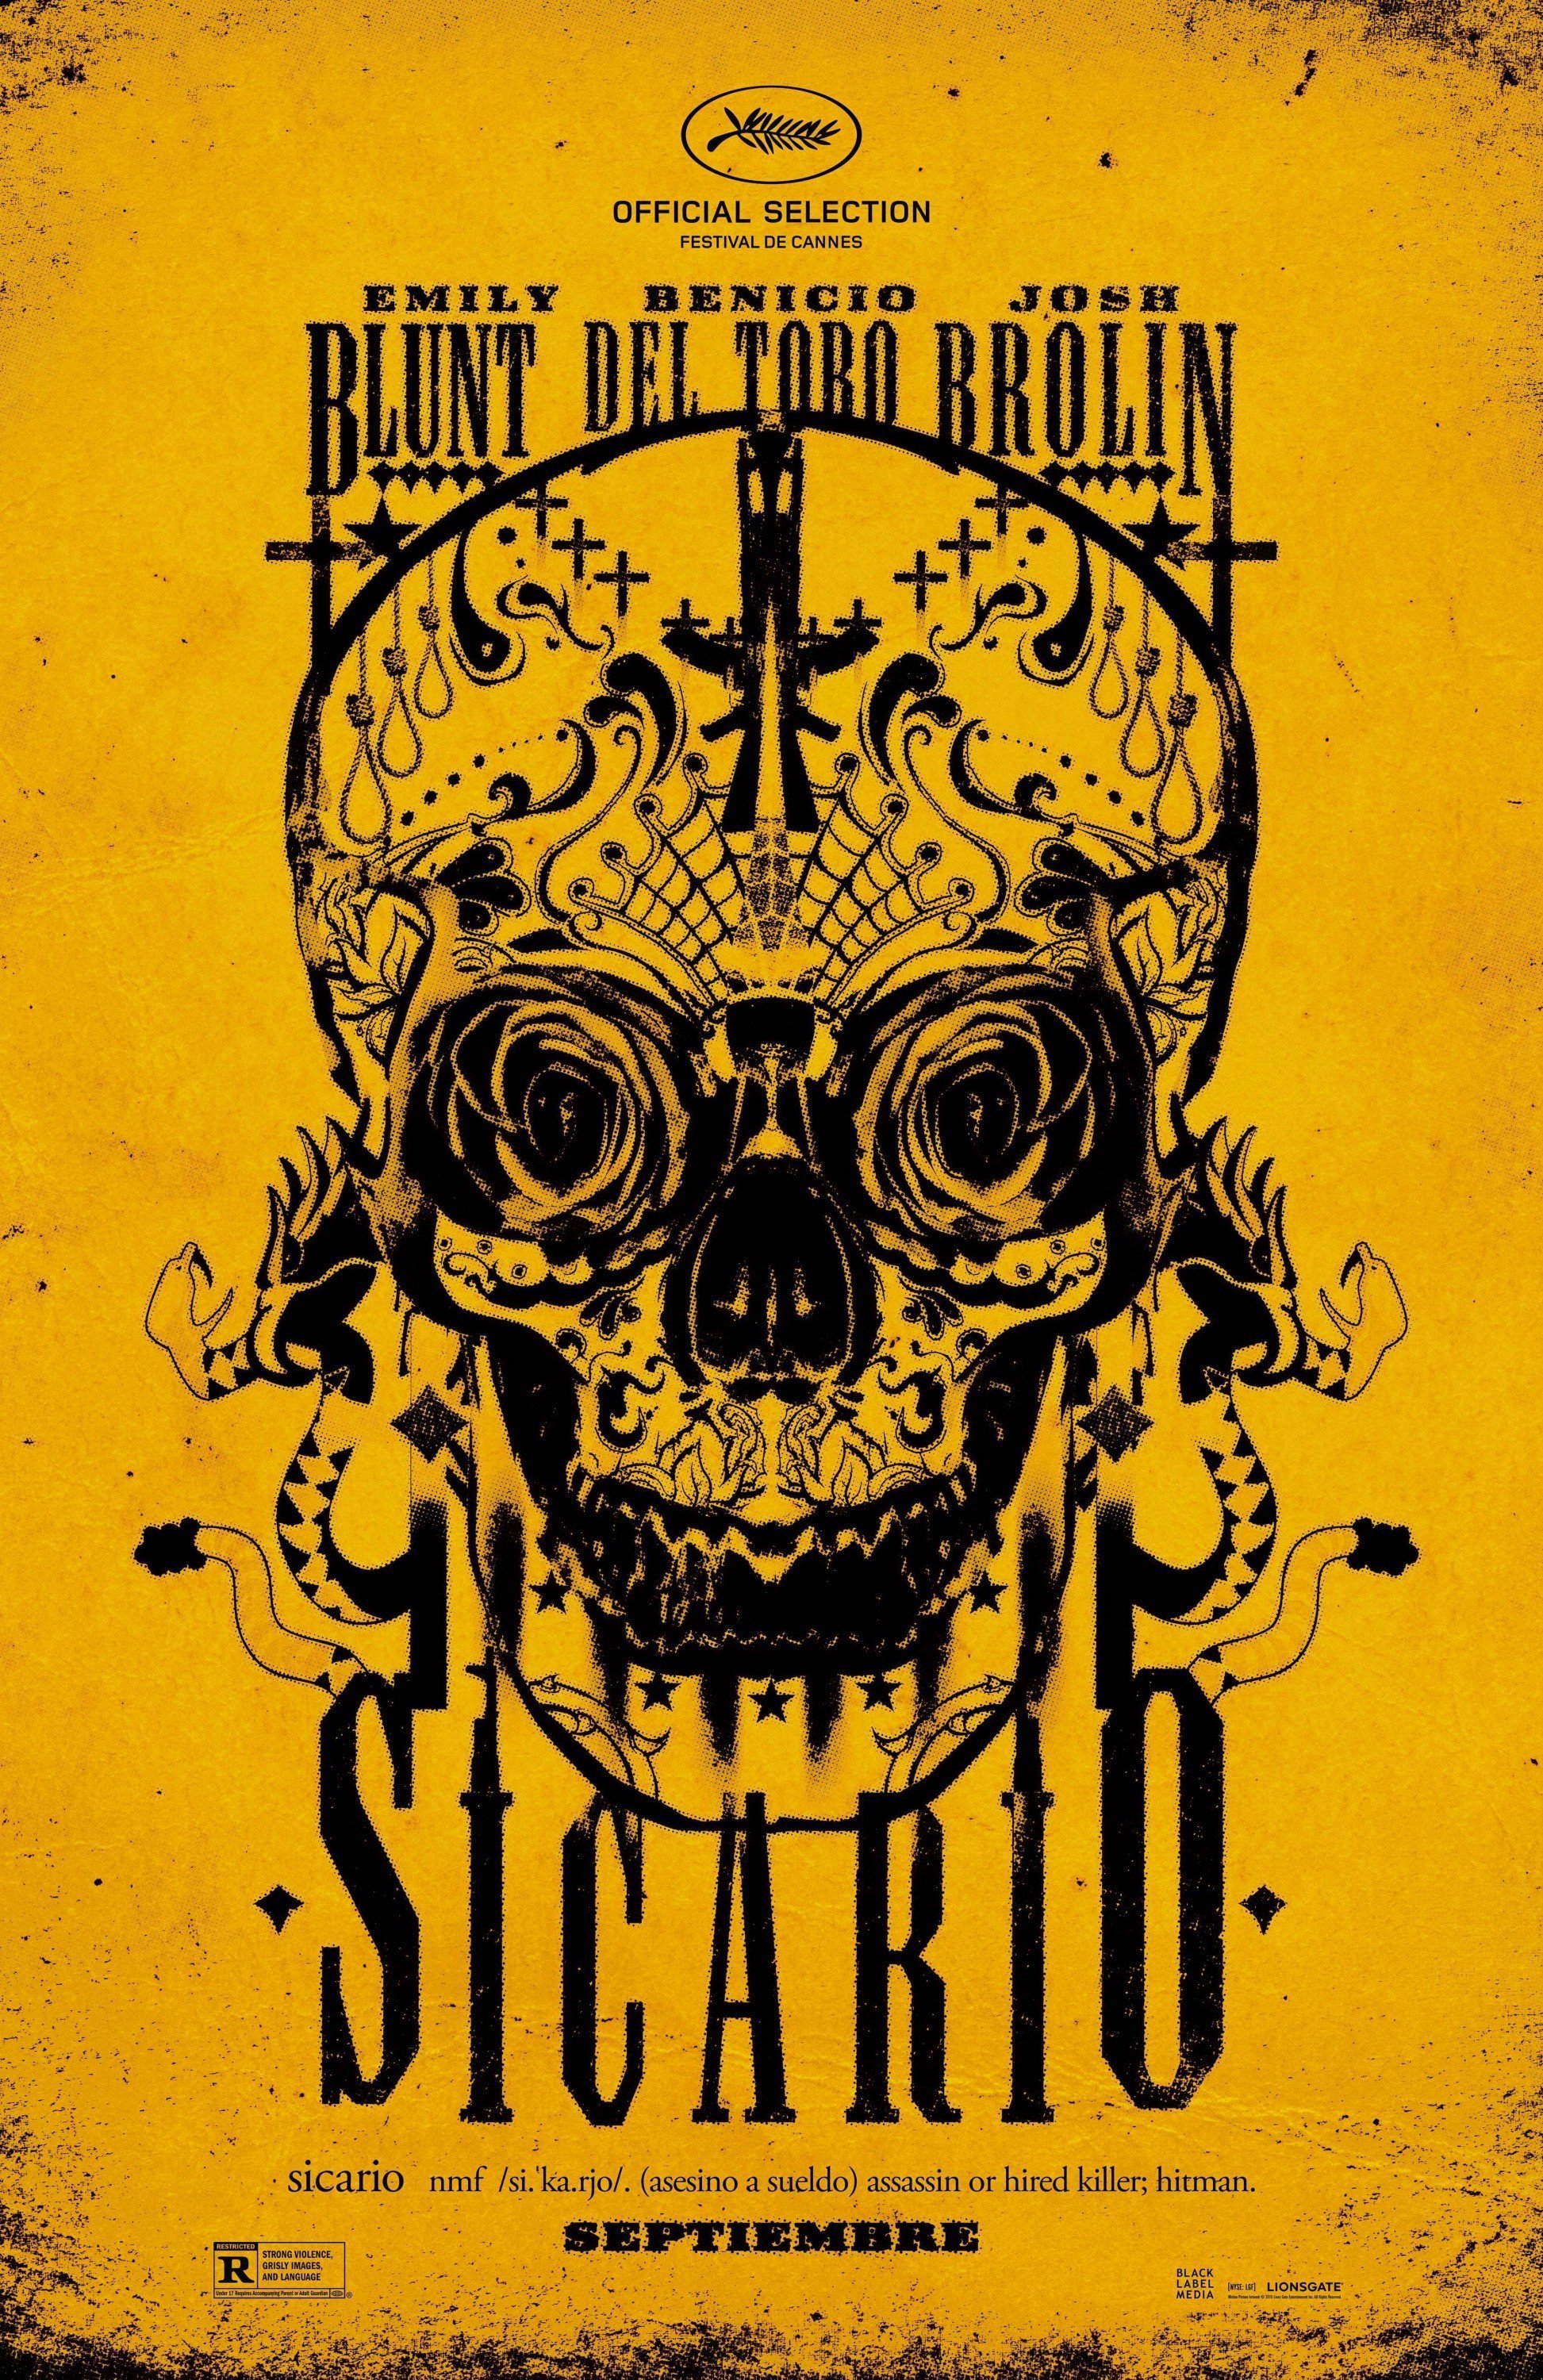 Poster teaser du film Sicario réalisé par Denis Villeneuve